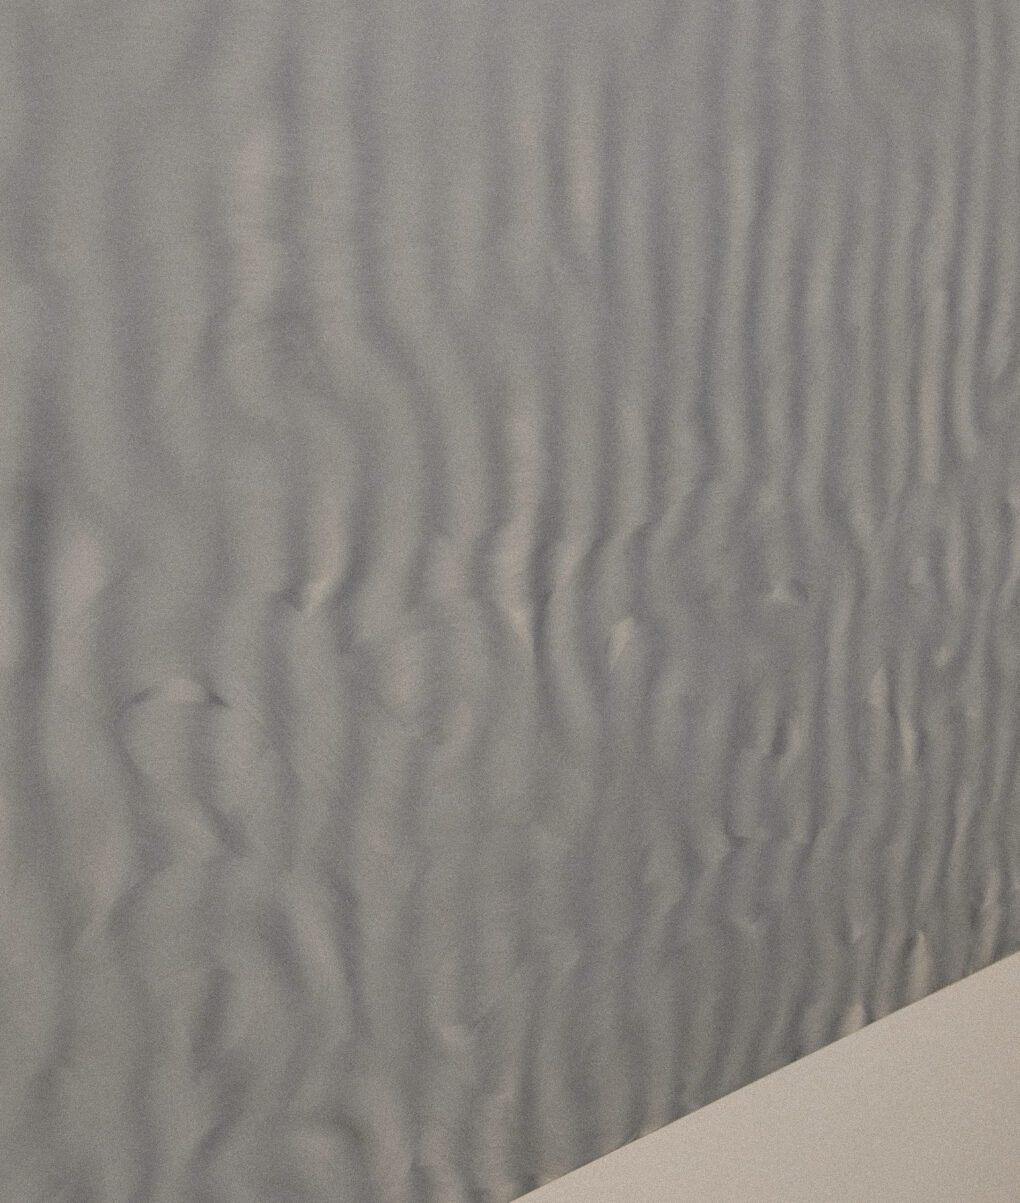 Gerhard Richter  ゲルハルト・リヒター展　　グレイの縞模様　1968  油彩、キャンパス